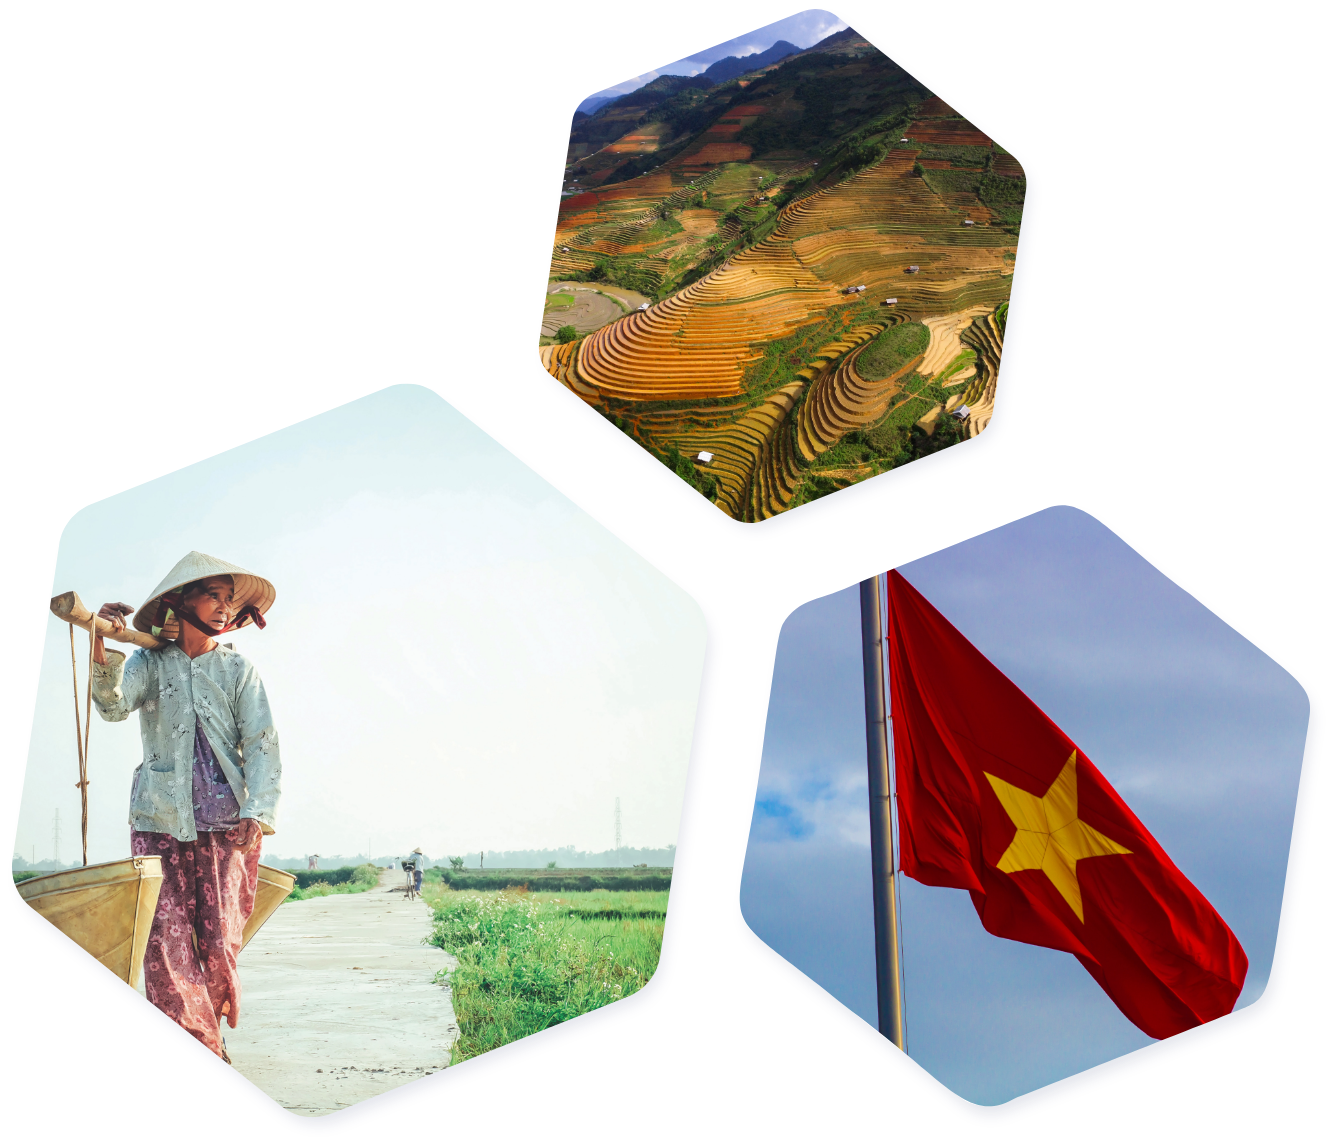 Hexagon Vietnam images